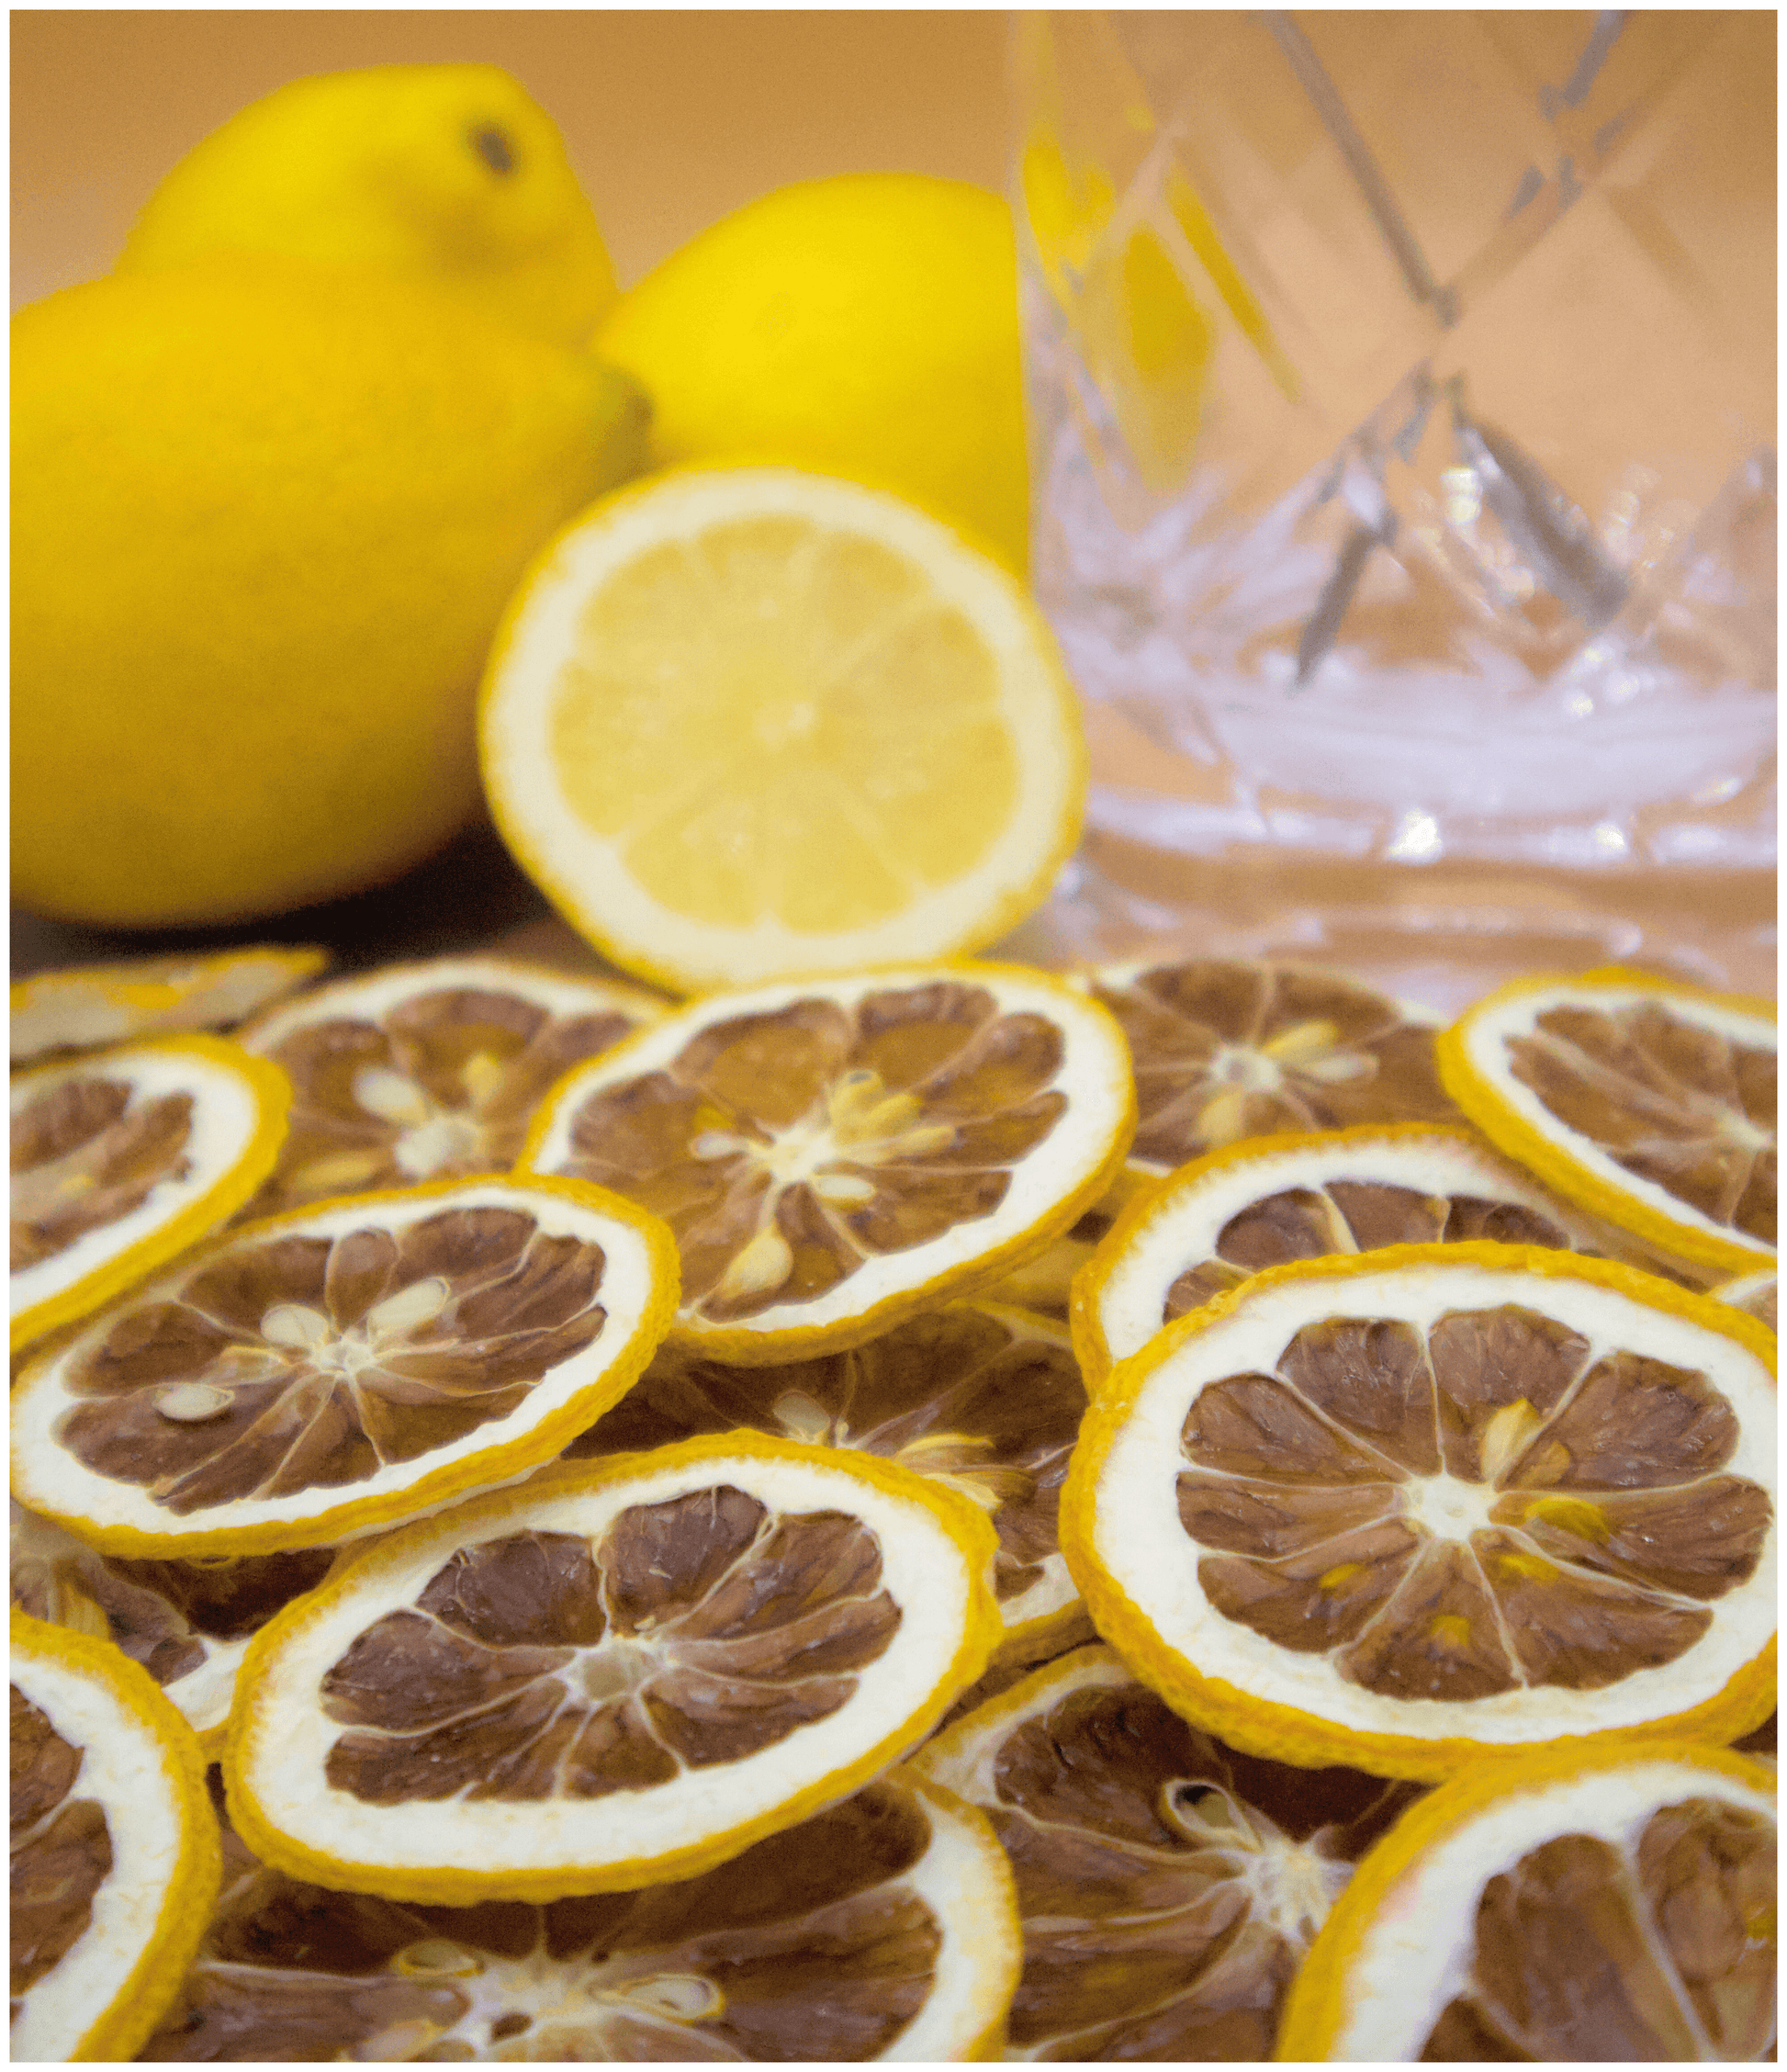 Lemon Cocktail Garnish